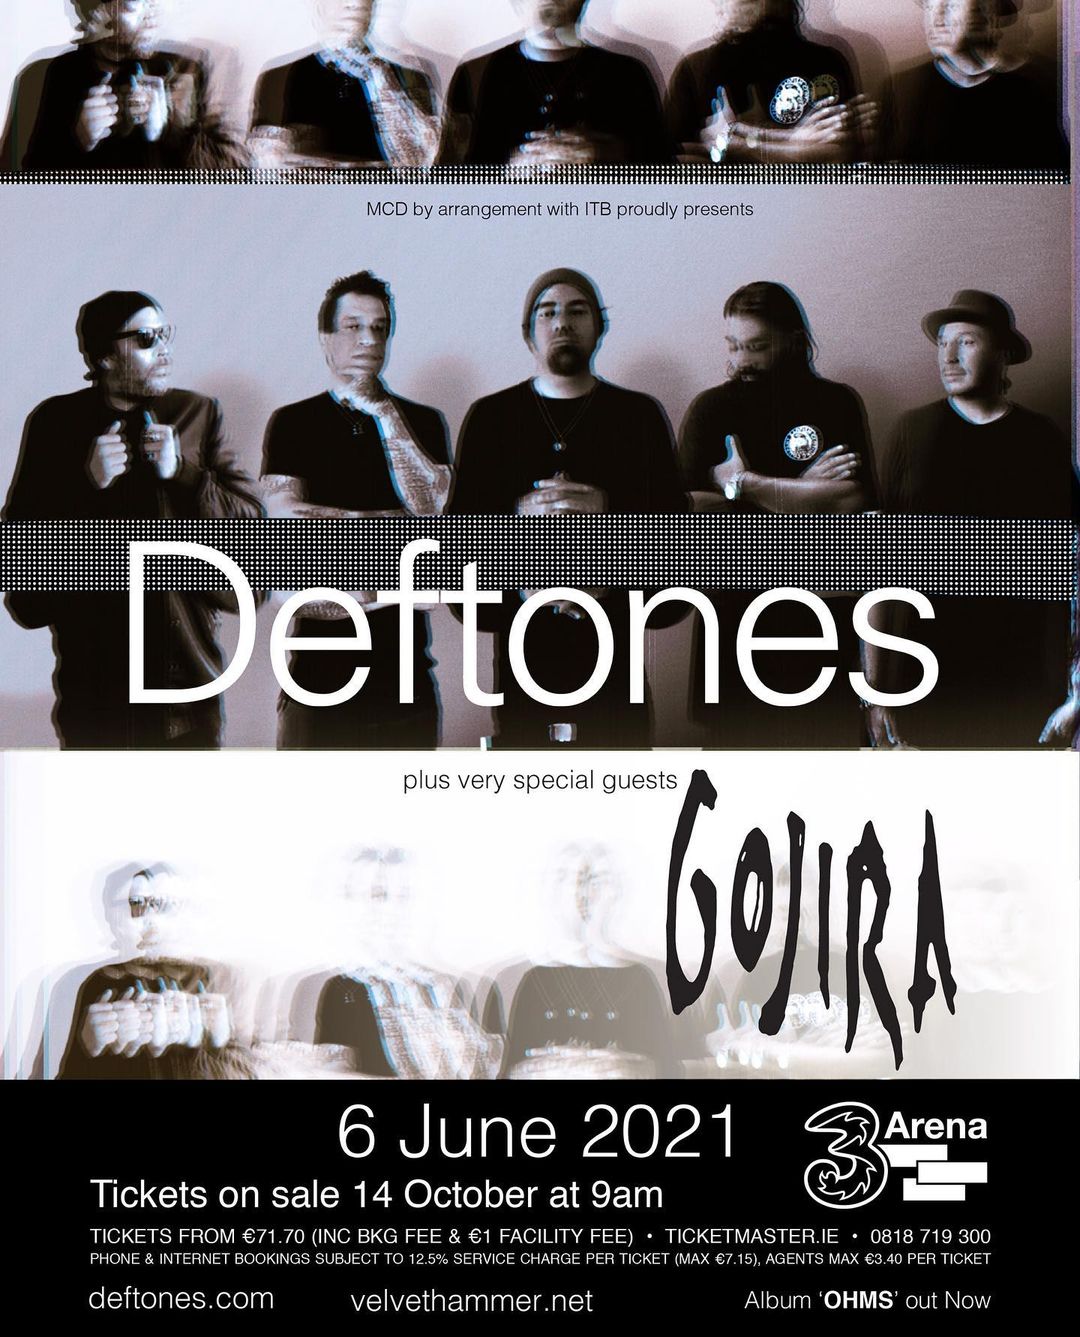 Концерт Deftones в Дублине, Ирландия, в 2021 году